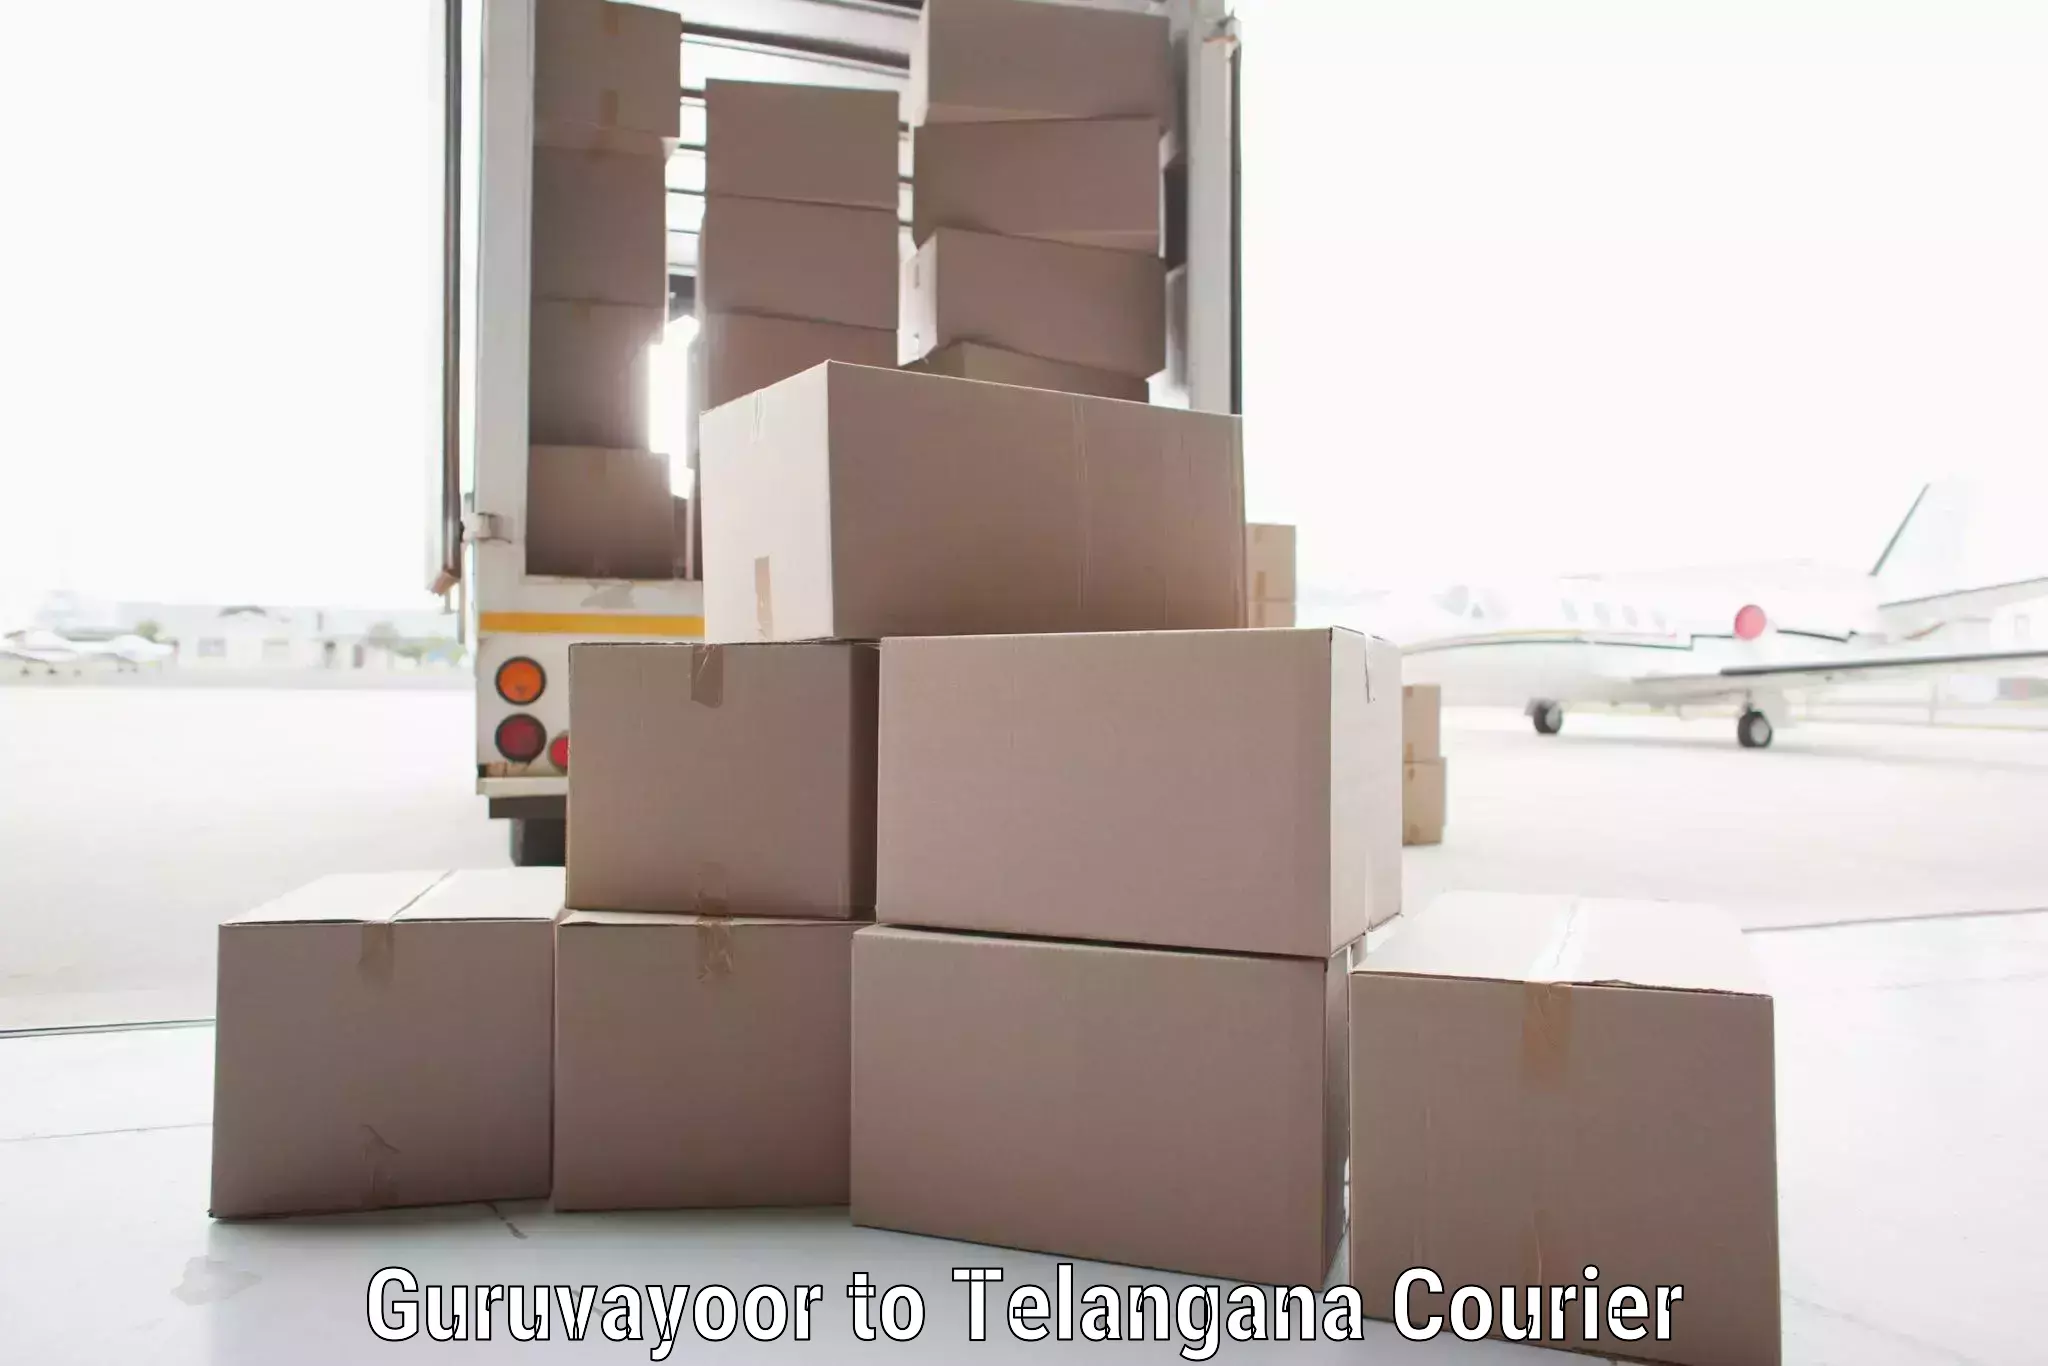 International courier networks Guruvayoor to Yellandu